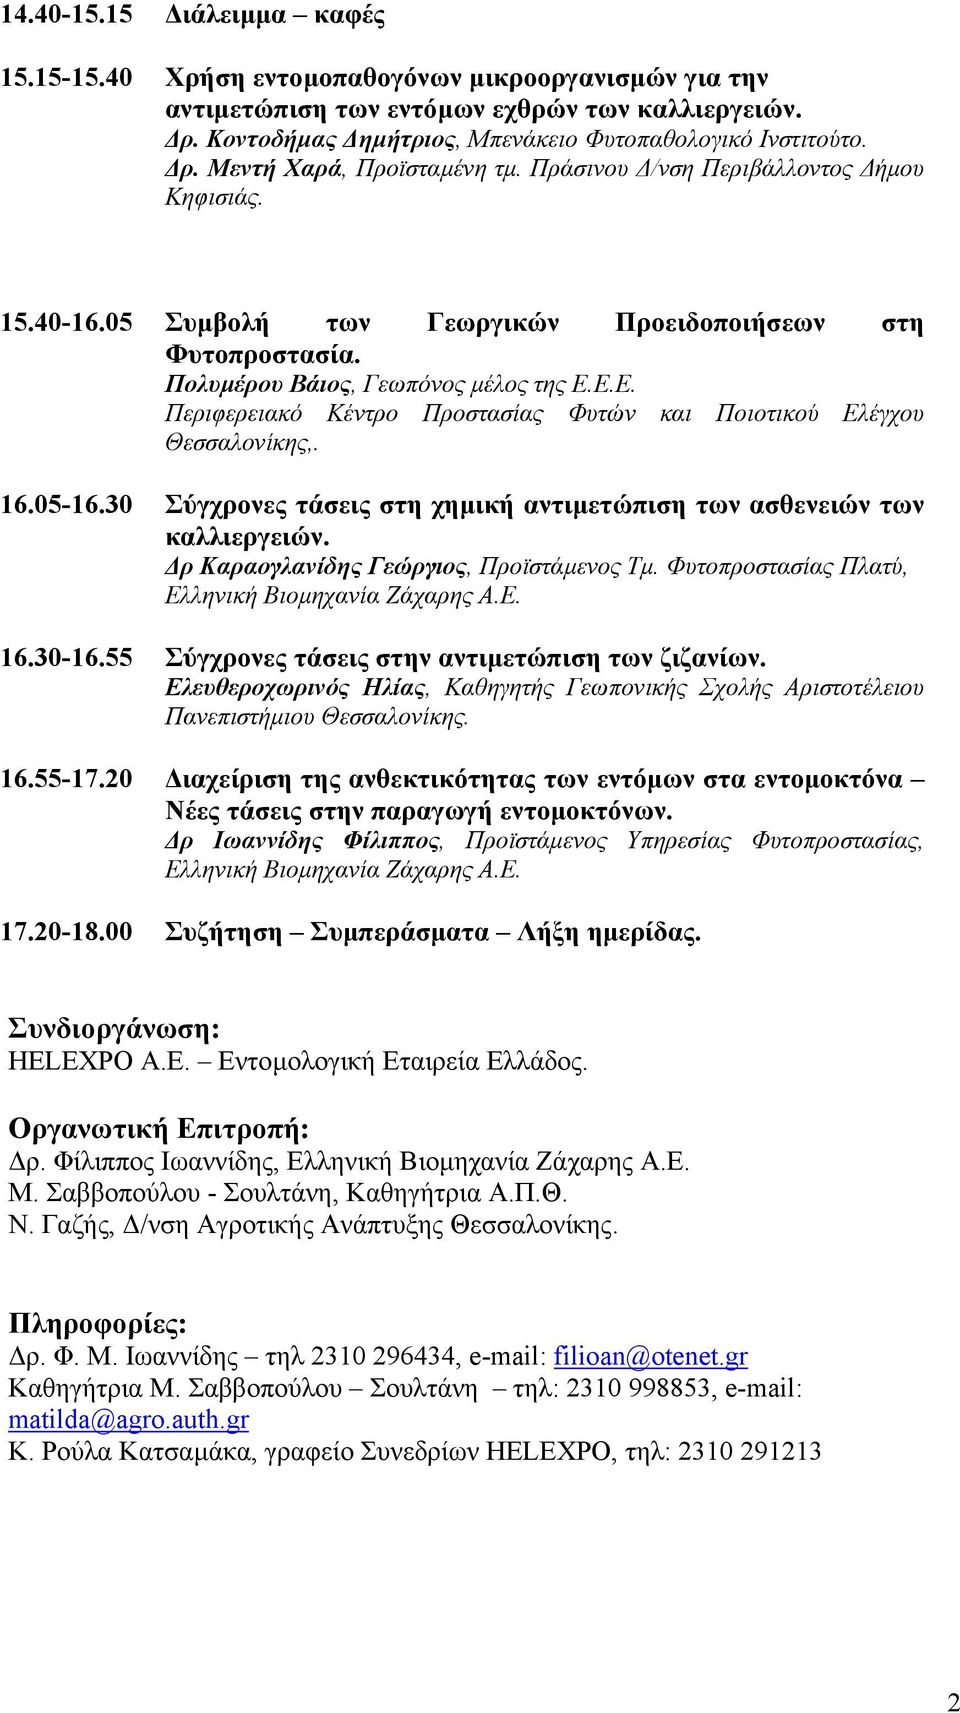 Ε.Ε. Περιφερειακό Κέντρο Προστασίας Φυτών και Ποιοτικού Ελέγχου Θεσσαλονίκης,. 16.05-16.30 Σύγχρονες τάσεις στη χηµική αντιµετώπιση των ασθενειών των καλλιεργειών.